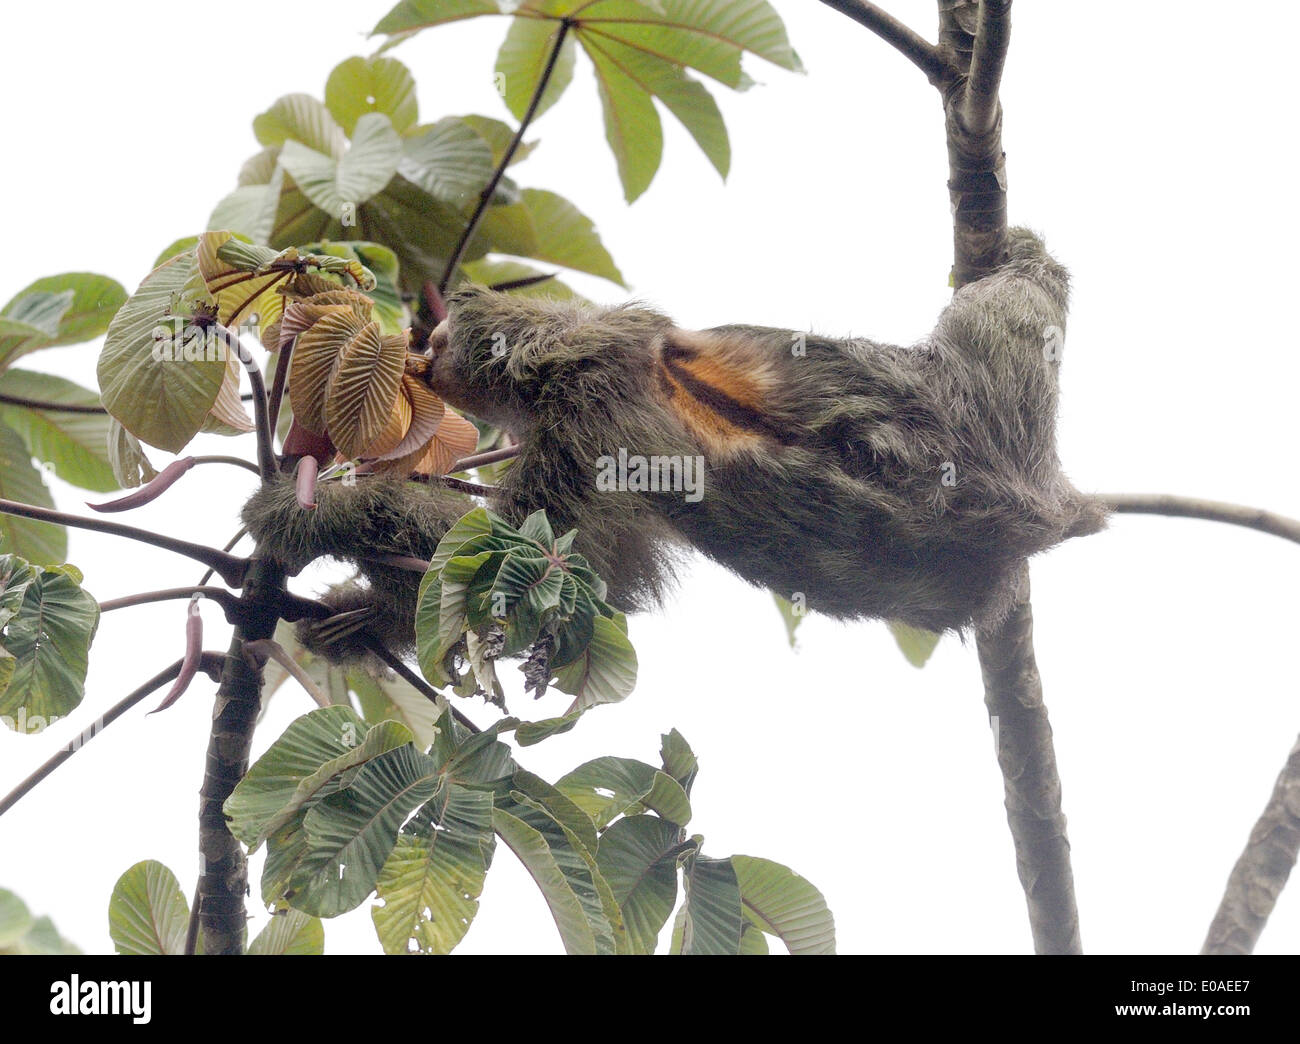 Un paresseux tridactyle ou Brown-throated Sloth (Bradypus variegatus) se nourrit de feuilles. Parc National de Tortuguero, Costa Rica Banque D'Images